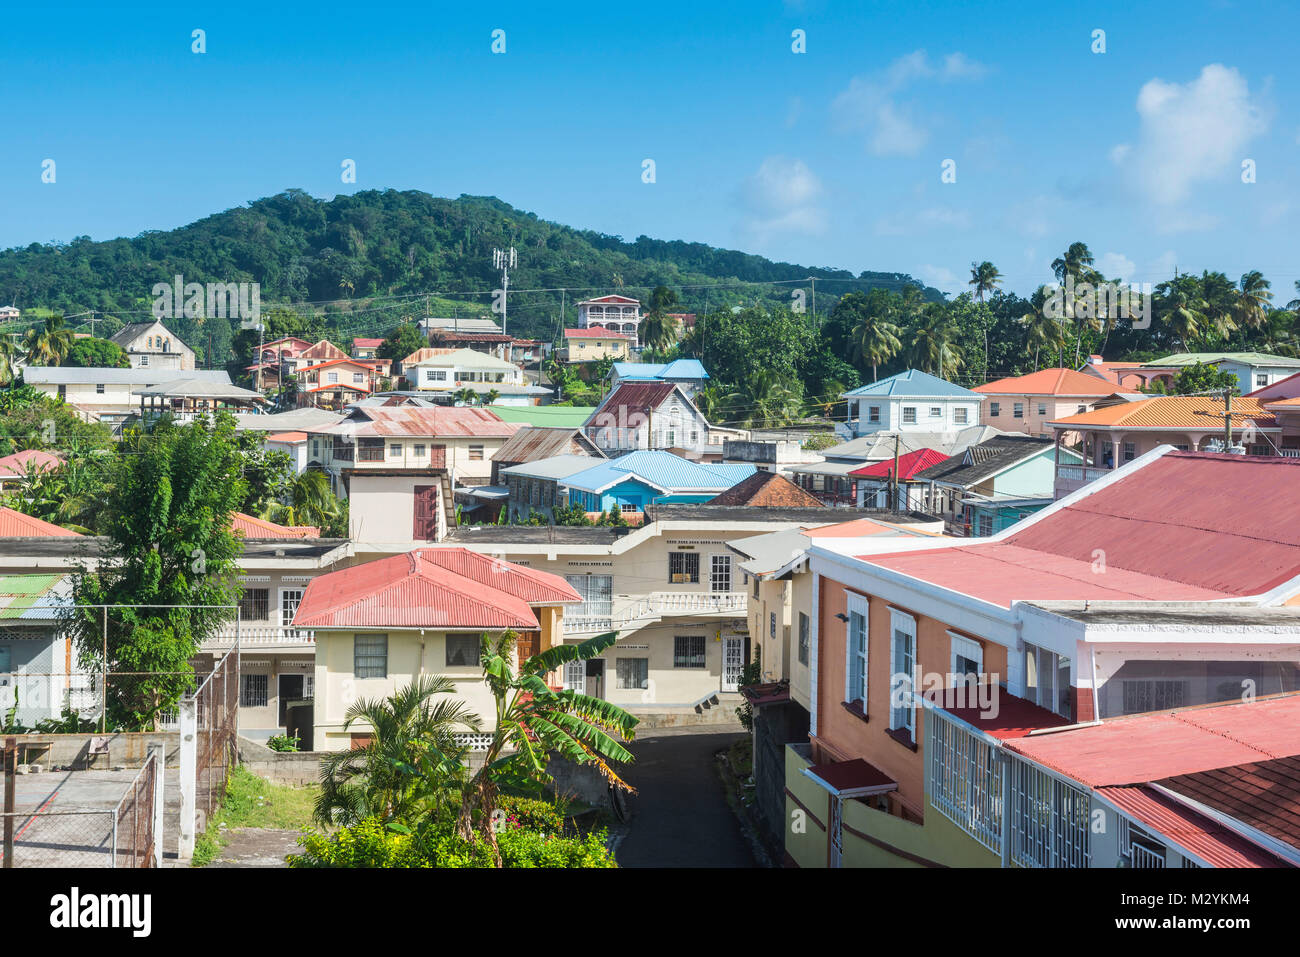 Donnent sur plus de sauteurs, Grenade, Caraïbes Banque D'Images